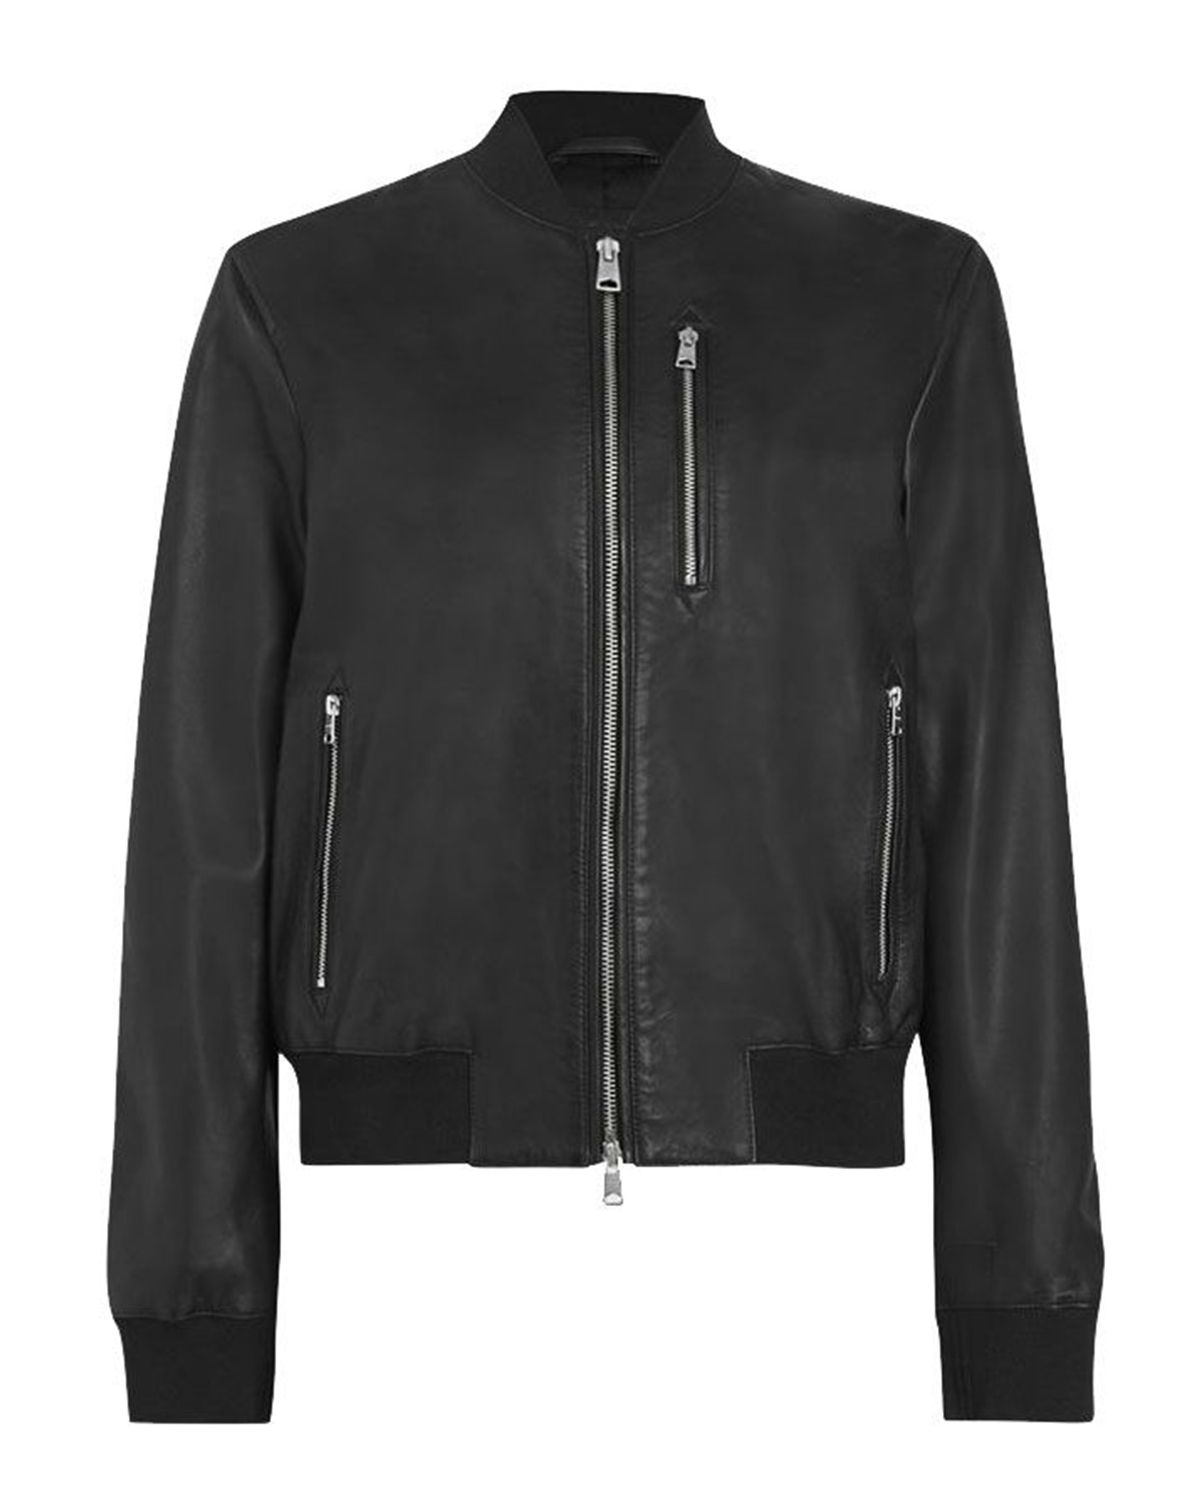 Womens Elegant Black Bomber Leather Jacket - Mready